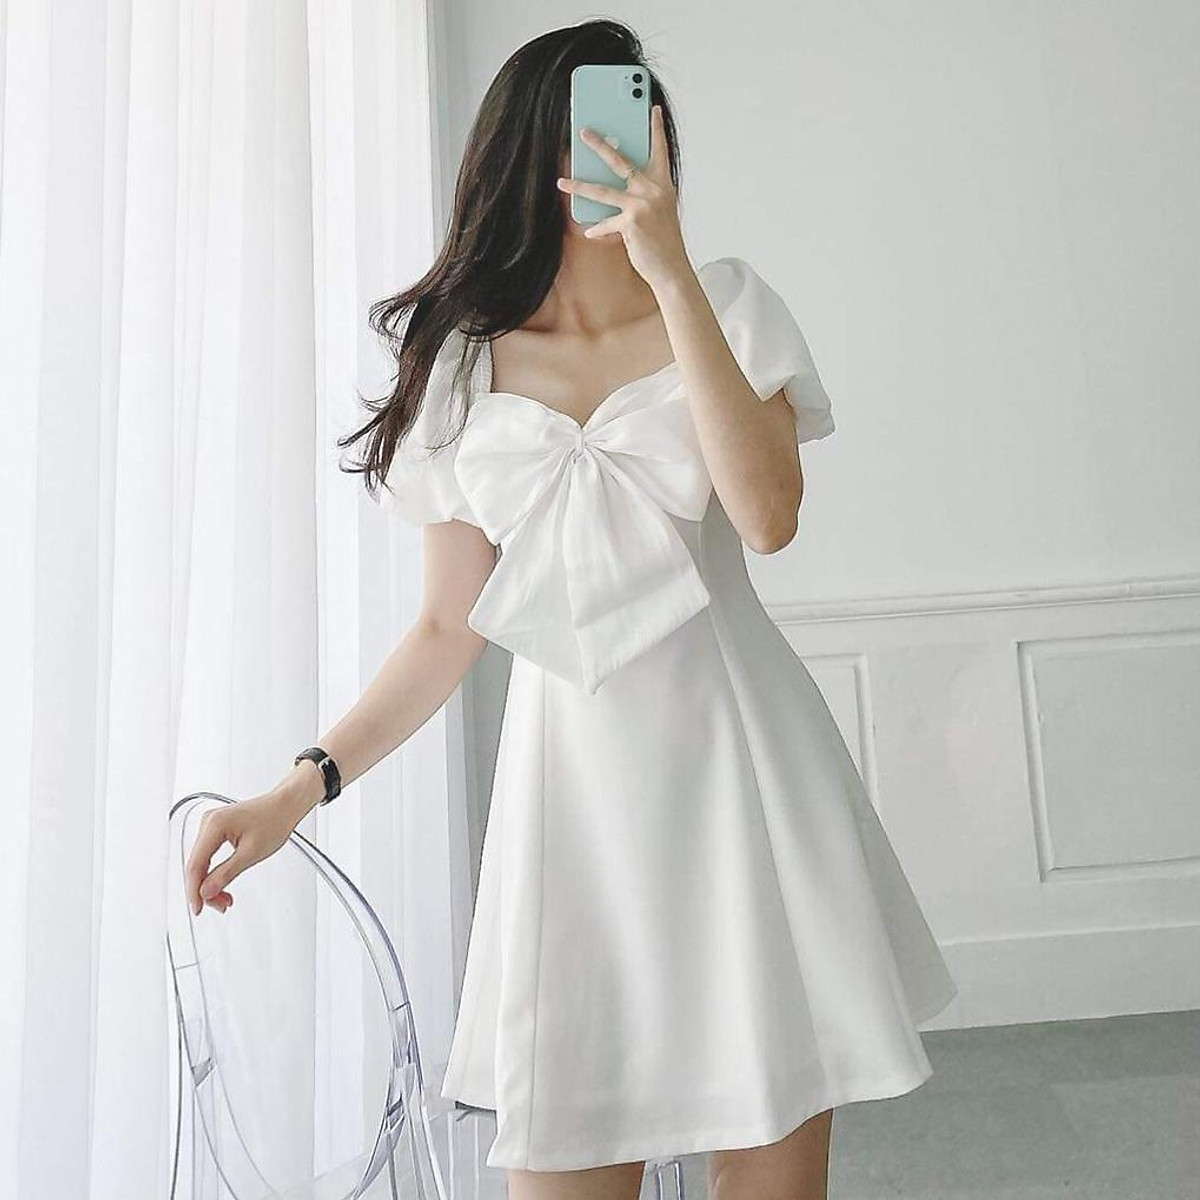 10 khuôn mẫu váy xòe White chắc chắn cần đem phía trong gầm tủ đồ gia dụng 2022